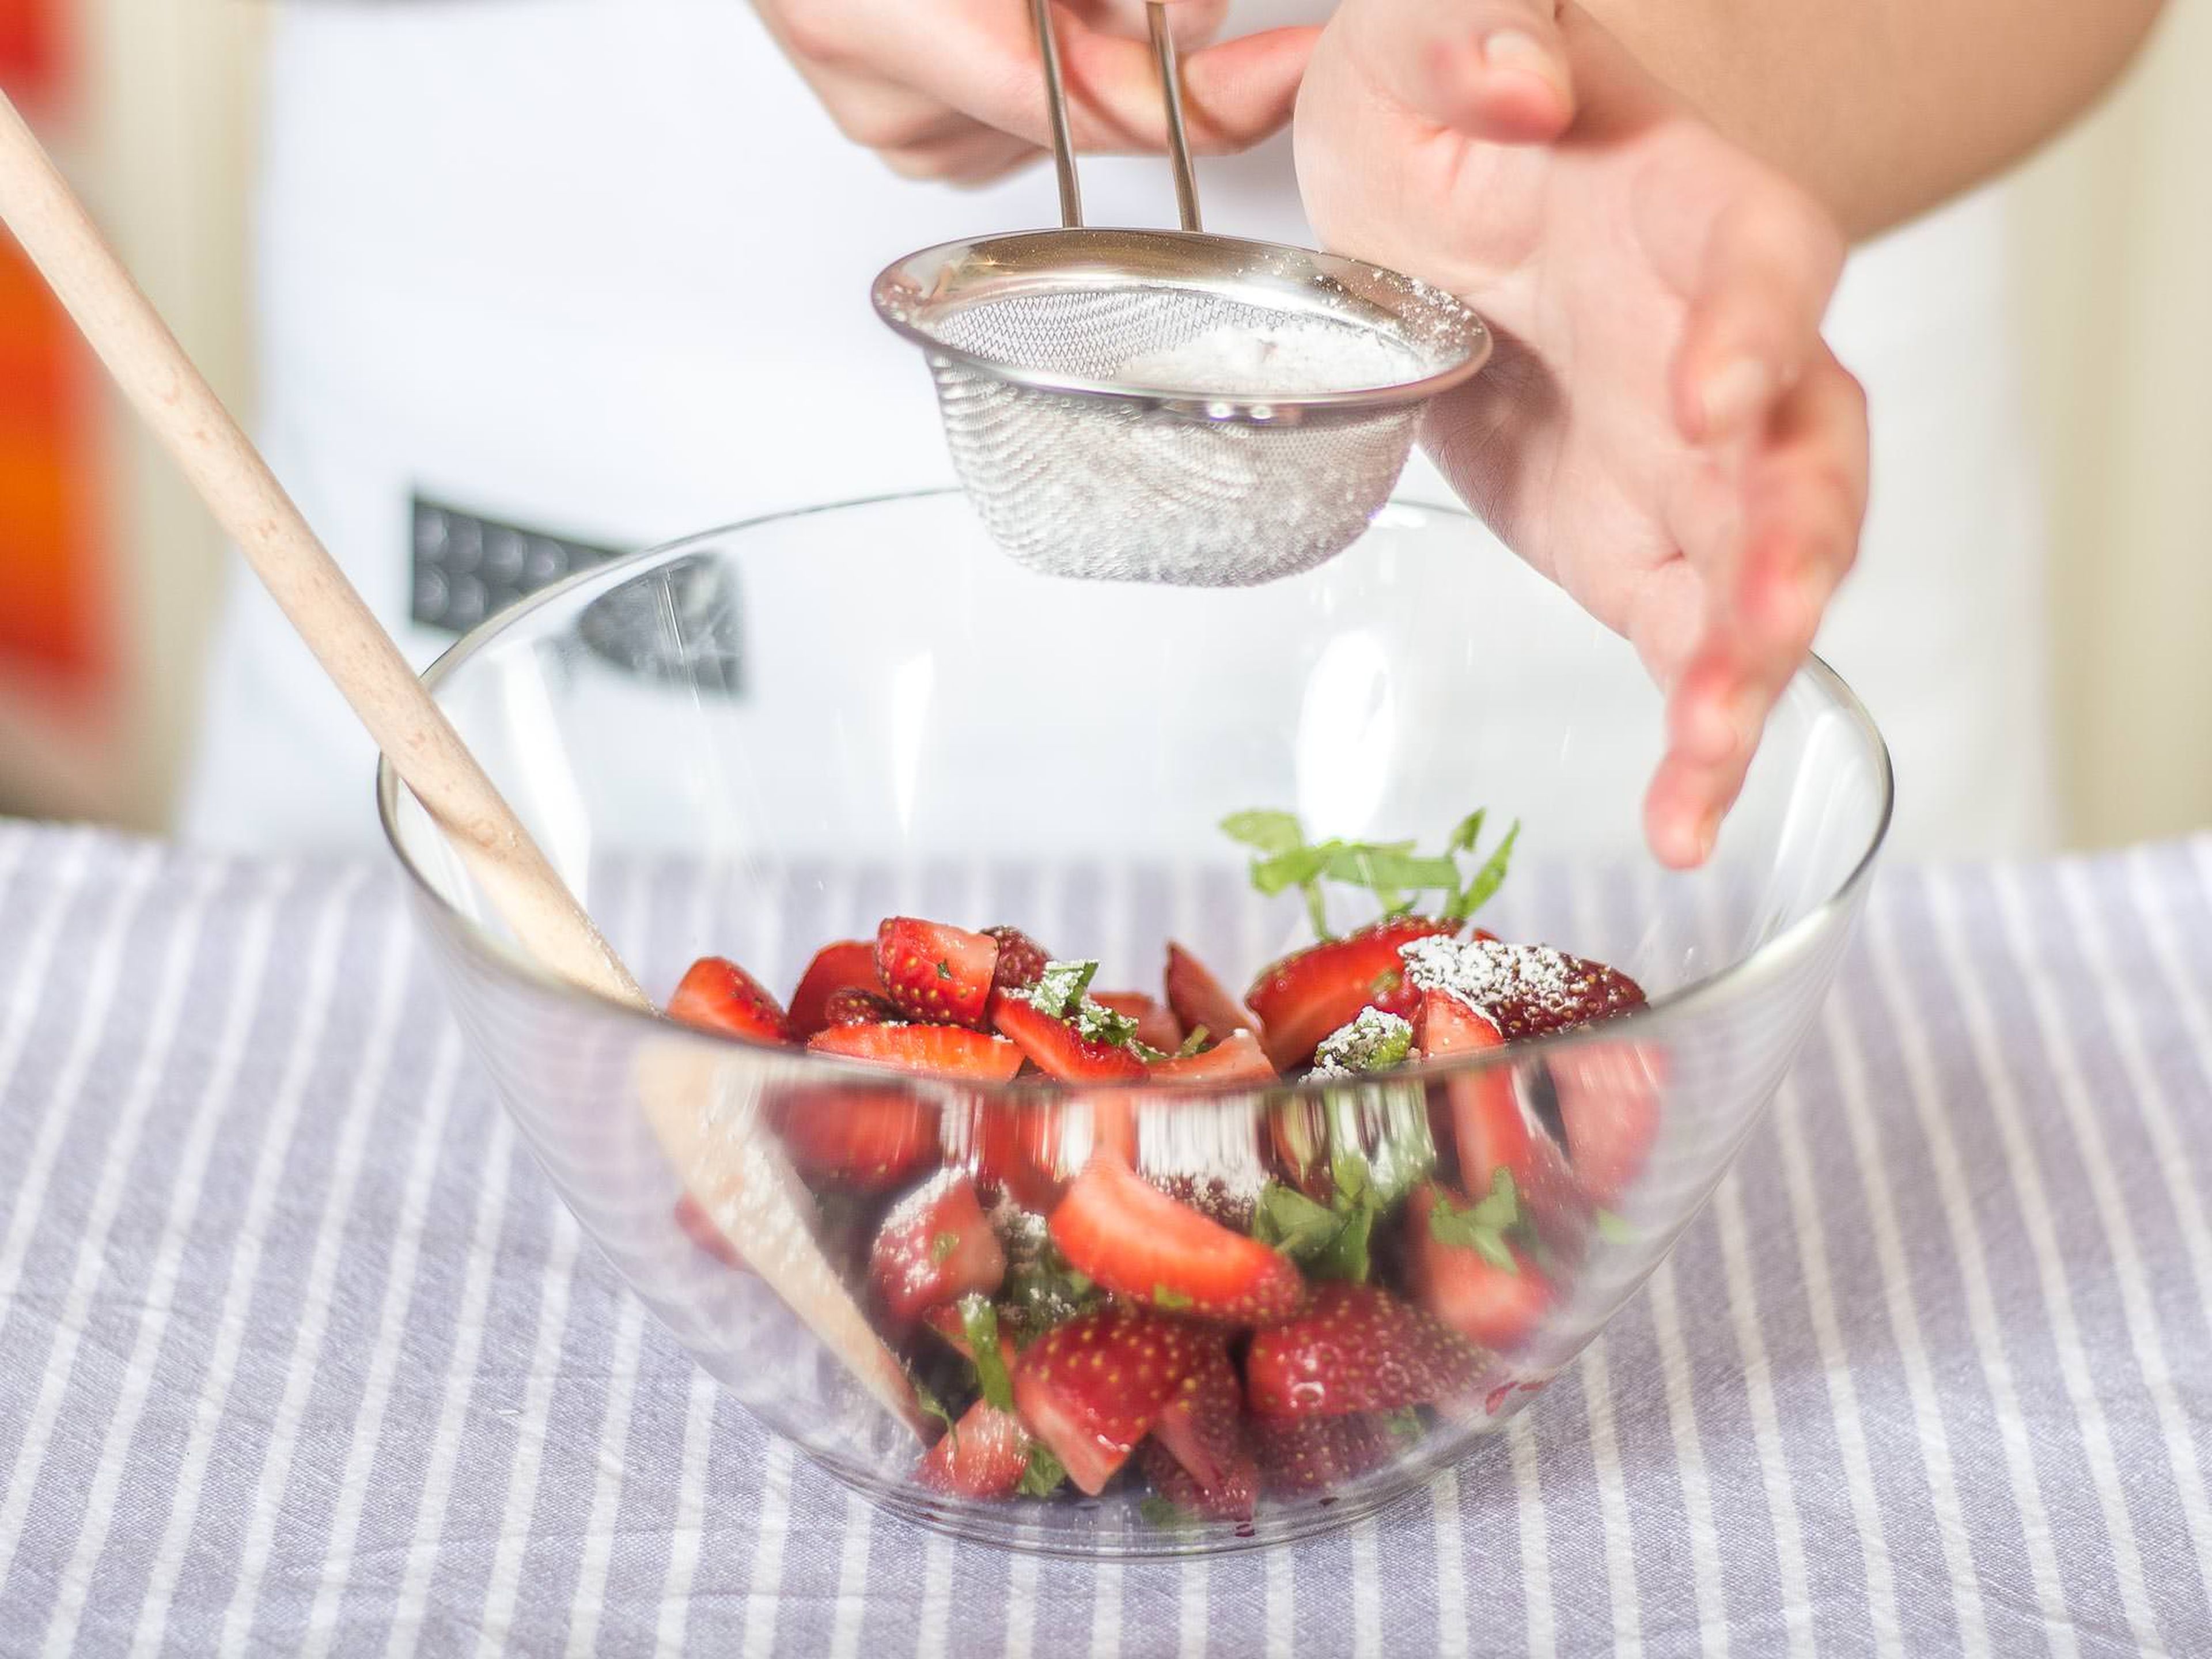 Erdbeeren und Minze mit einem Teil Puderzucker vermengen und beiseitestellen. Der Zucker verleiht den Erdbeeren einen schönen Glanz.